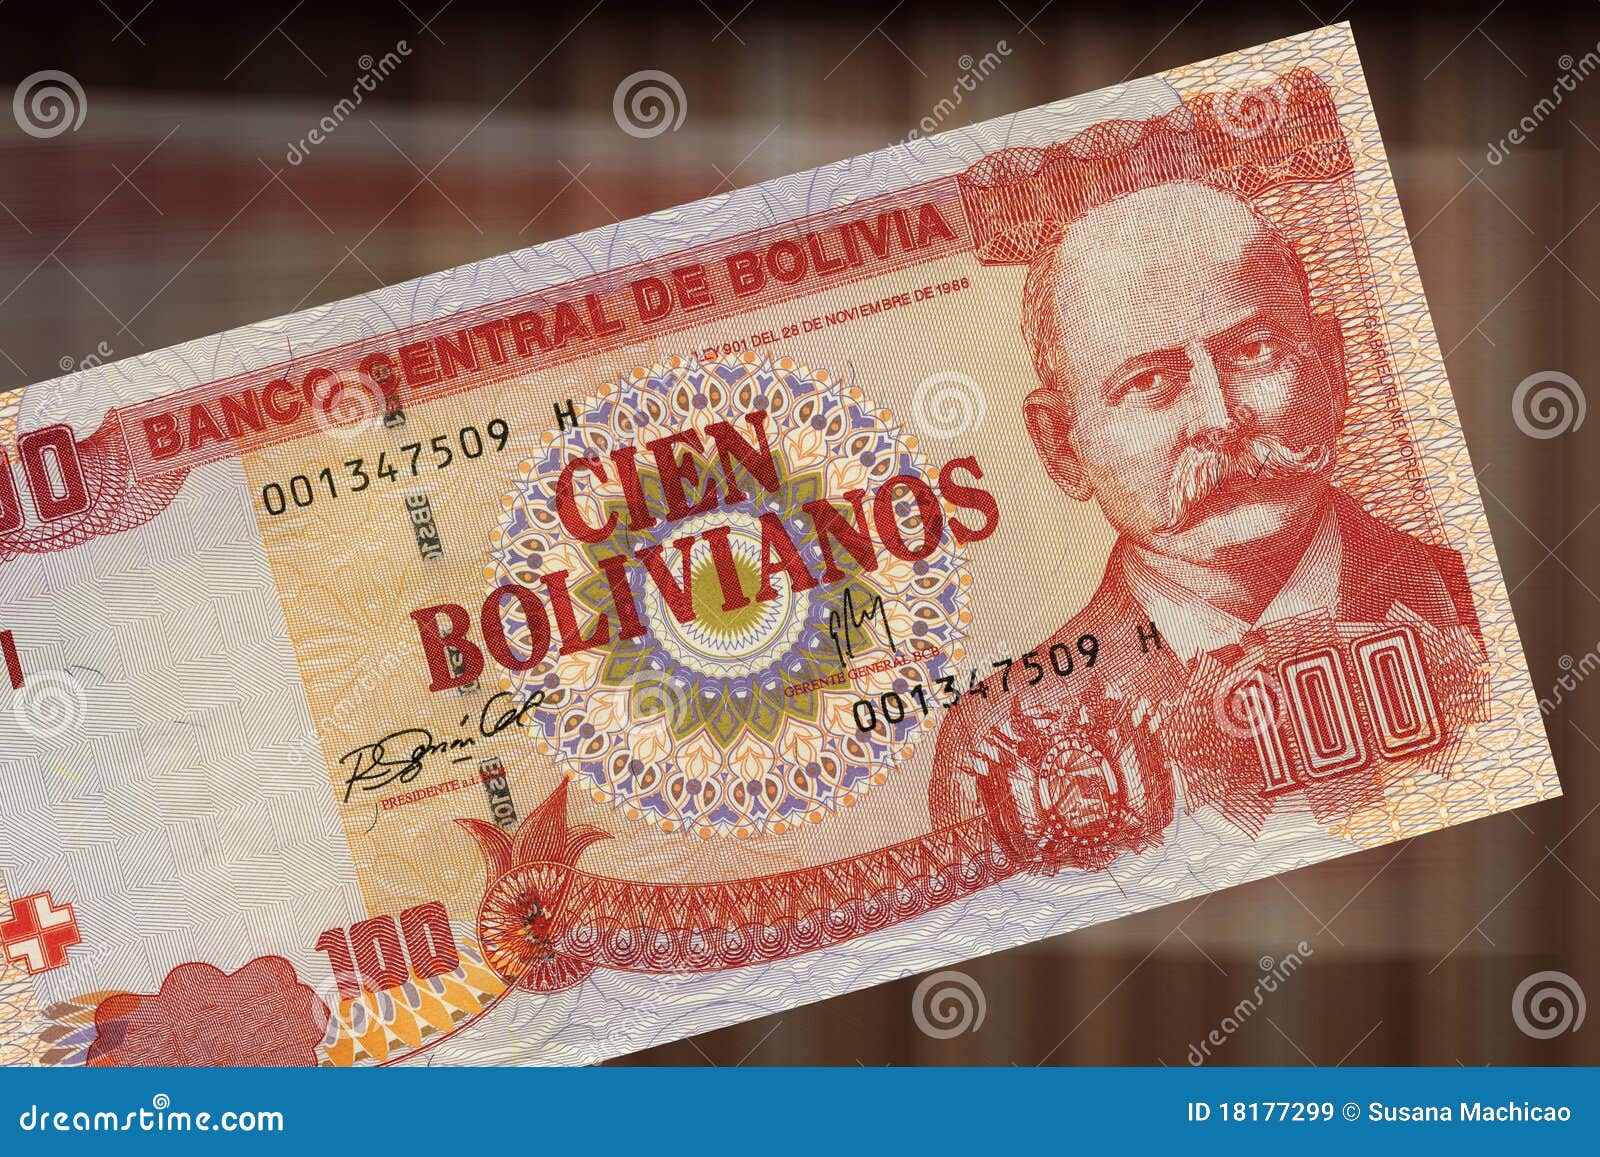 100 bolivianos